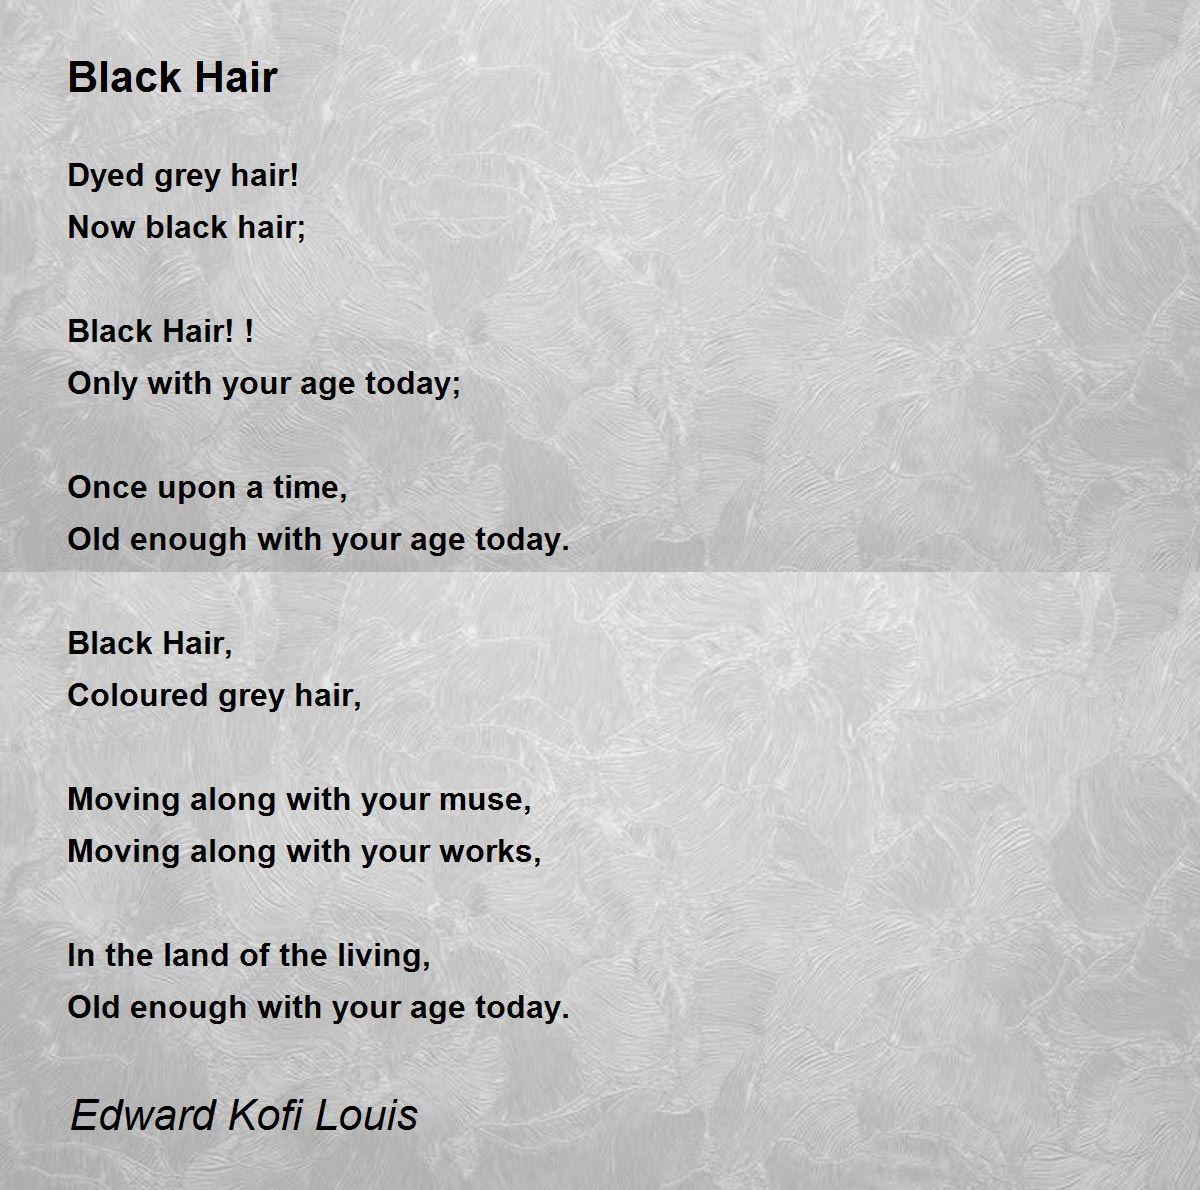 Black Hair - Black Hair Poem by Edward Kofi Louis